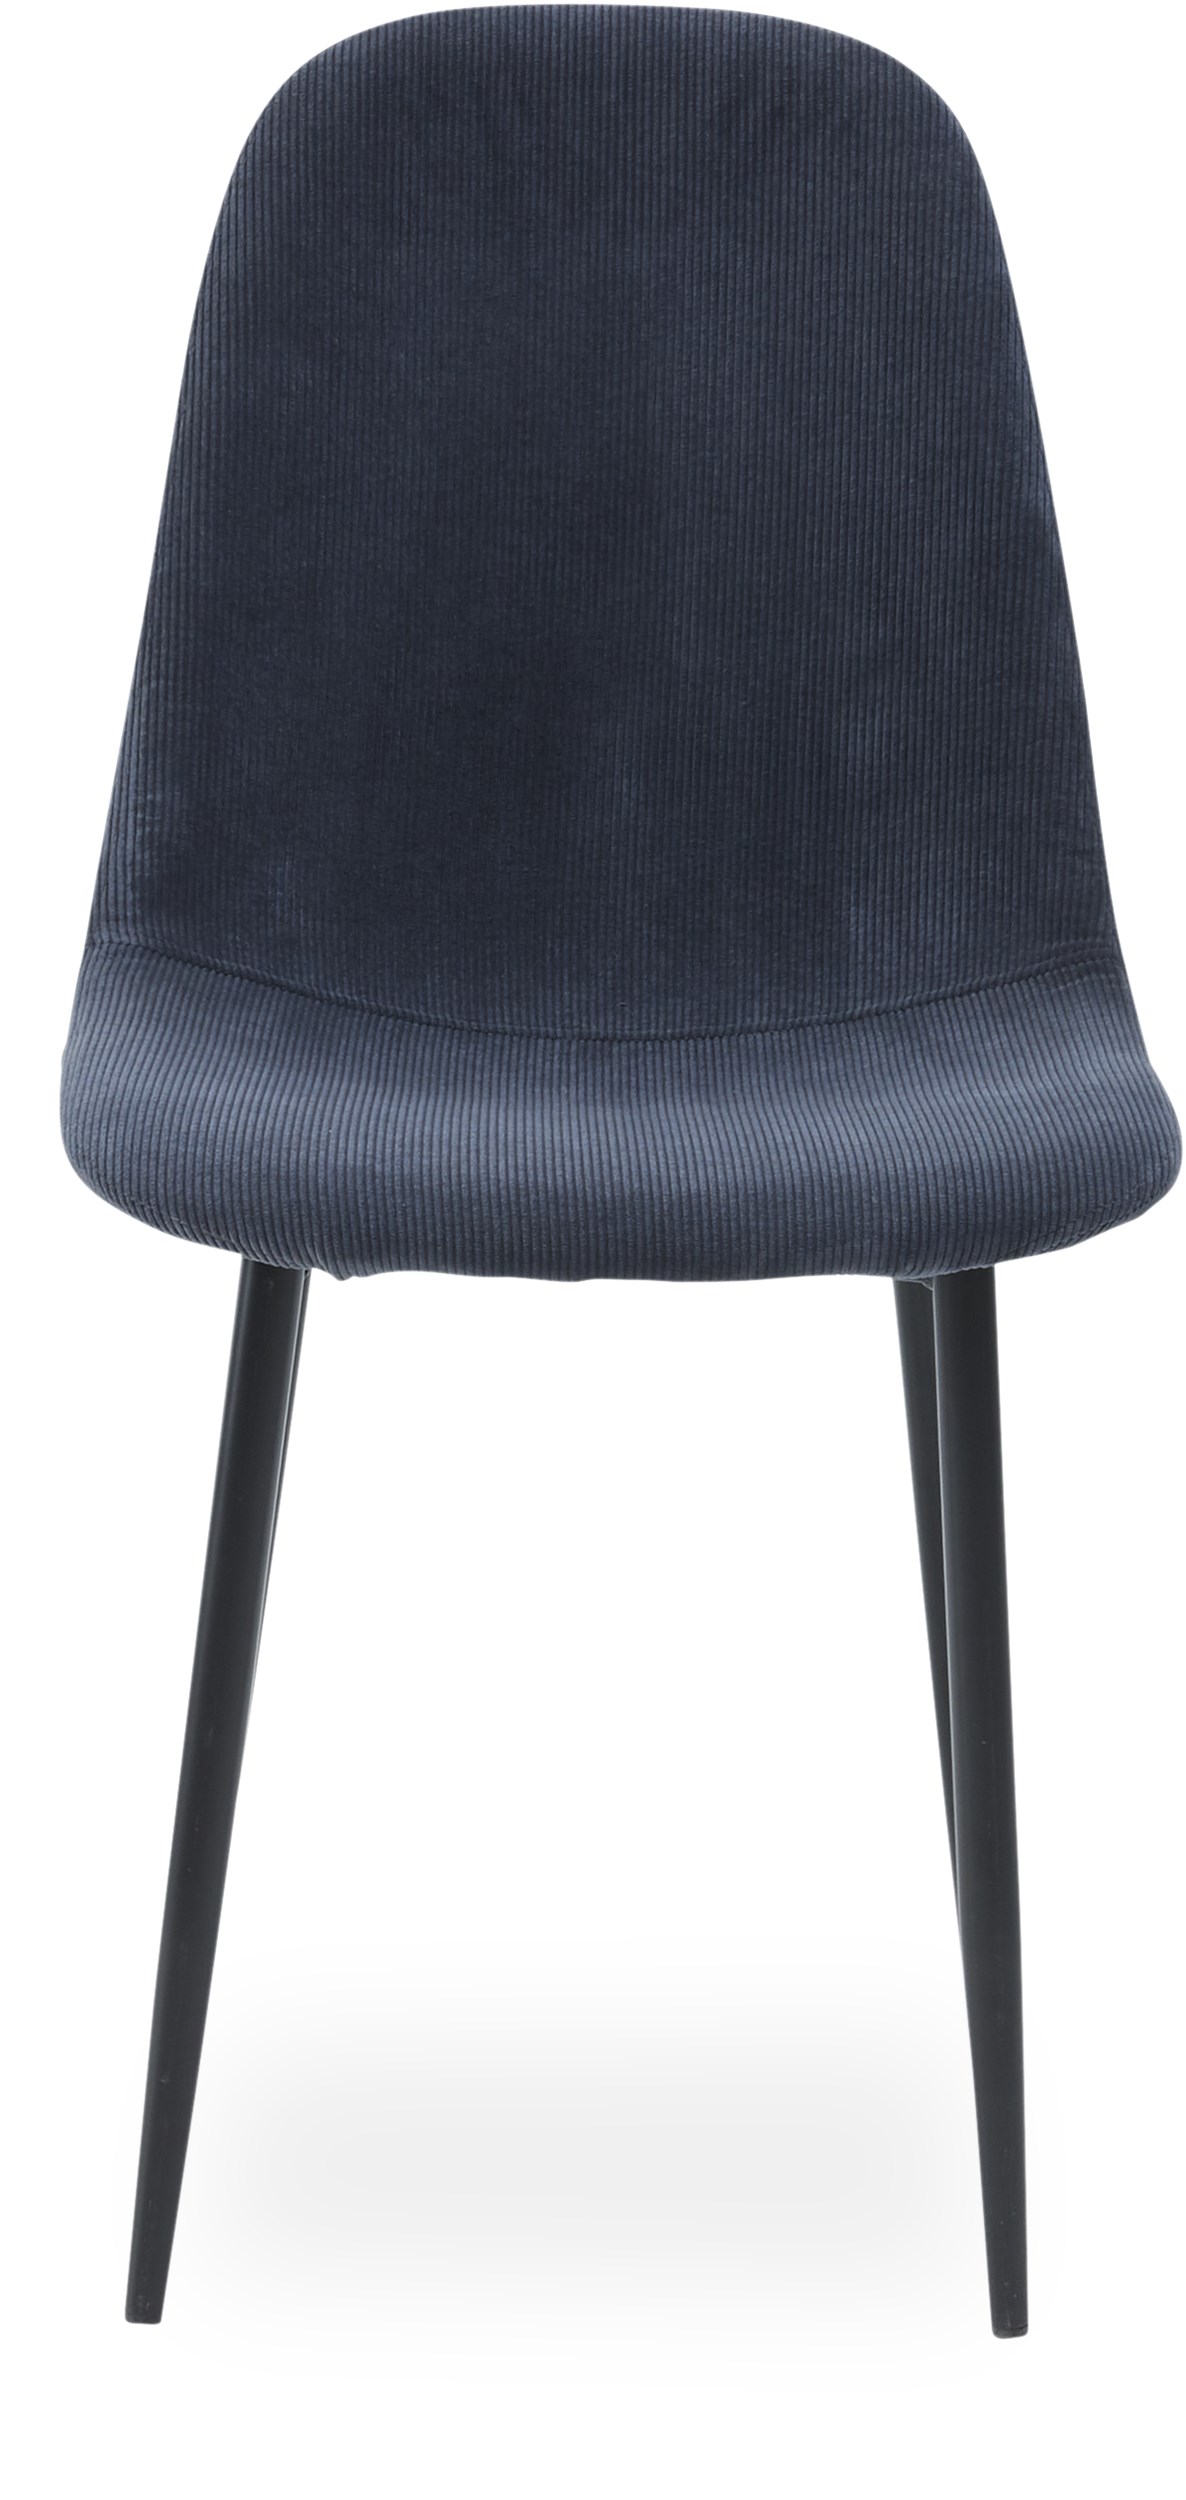 Timon Spisebordsstol - Sæde i Wave 040 slate grey fløjl og ben i sort pulverlakeret metal